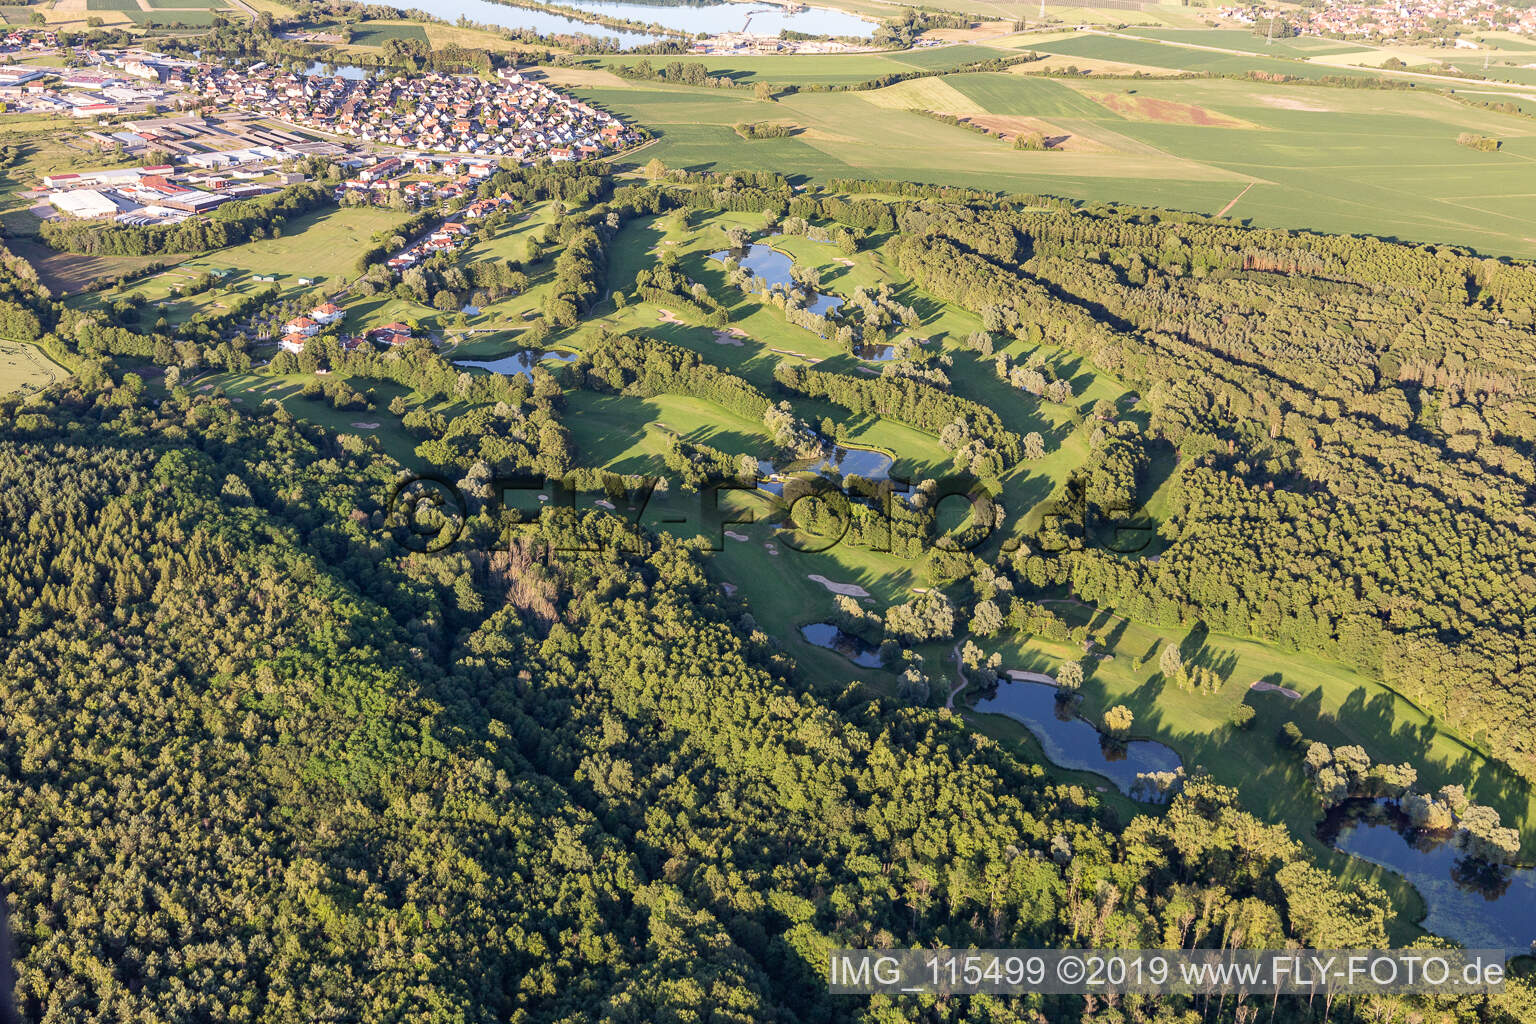 Golfclub Baden-Baden in Soufflenheim im Bundesland Bas-Rhin, Frankreich